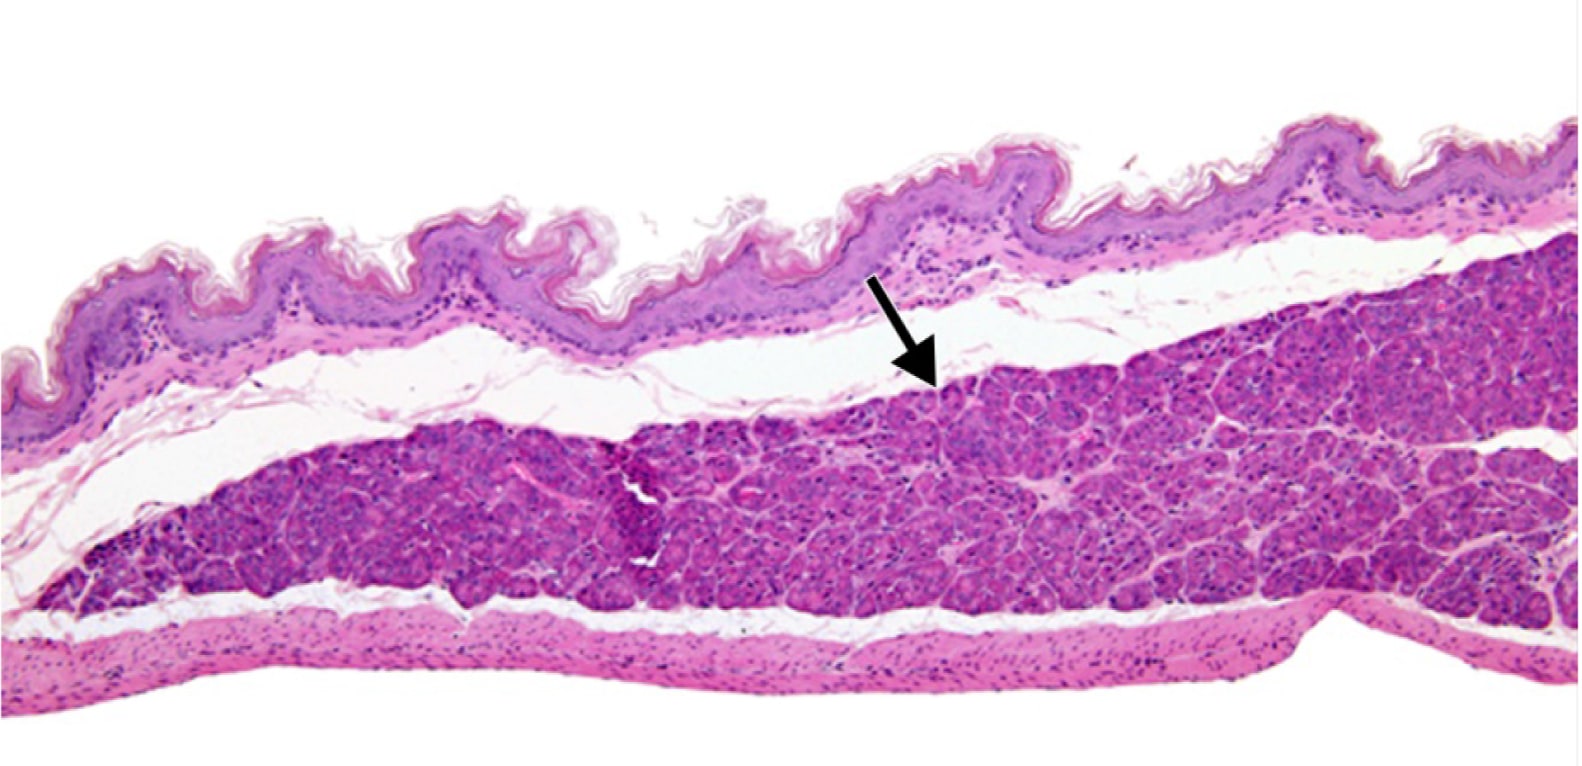  <strong>Рис. 2.</strong> Эктопическая ткань поджелудочной железы в подслизистом слое безжелезистой части желудка у мыши (10)